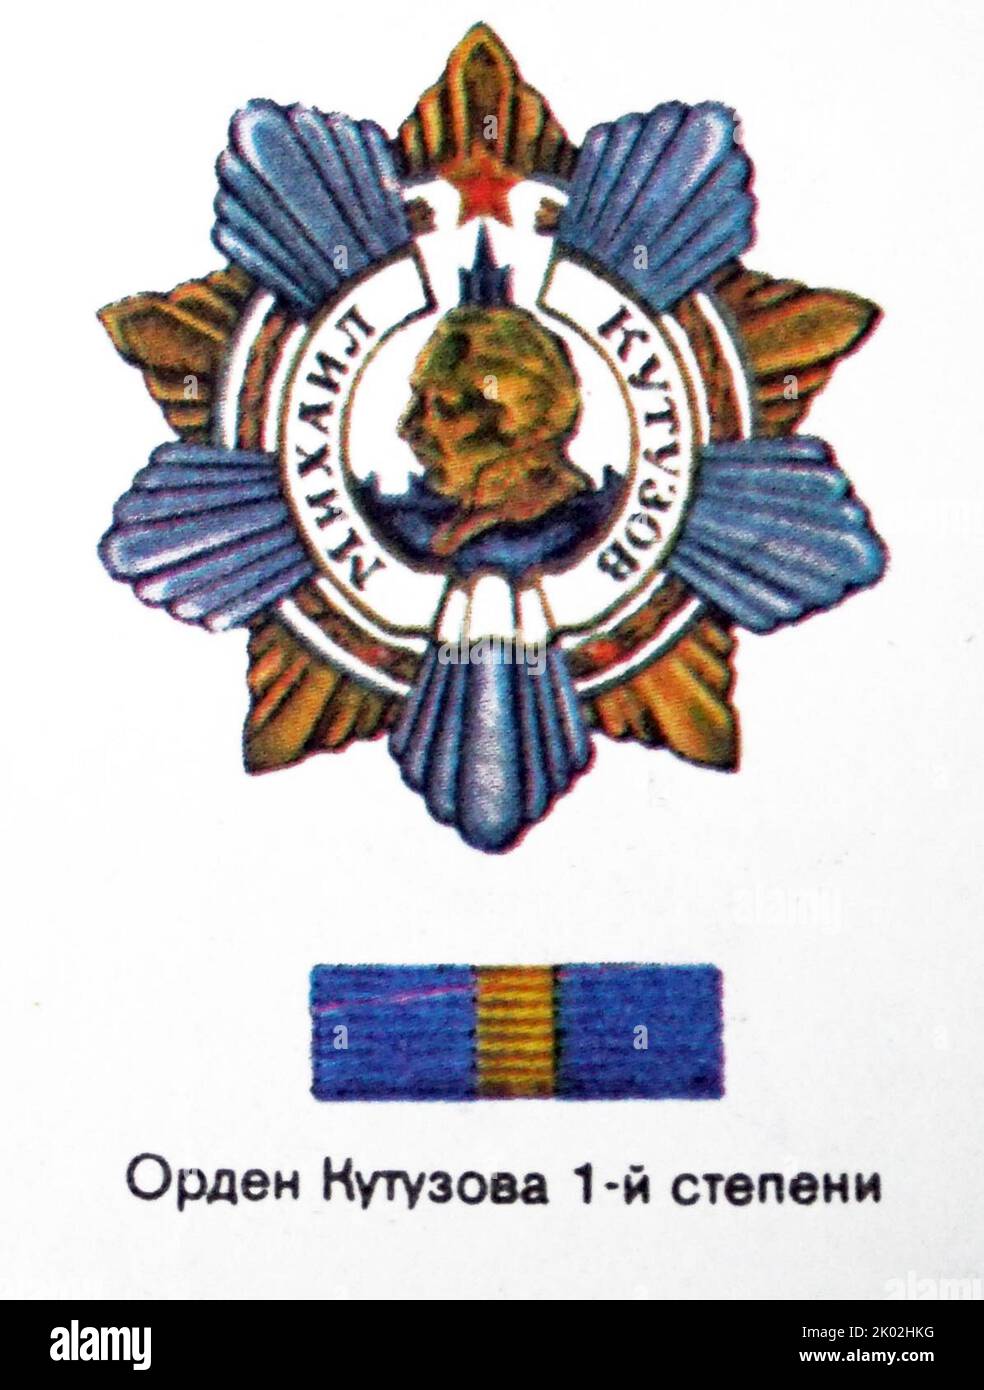 L'Ordine di Kutuzov è una decorazione militare della Federazione Russa che prende il nome dal famoso maresciallo russo Mikhail Illarionovich Kutuzov (1745-1813). L'Ordine fu istituito durante la seconda guerra mondiale per ricompensare gli alti ufficiali dell'Armata Rossa Foto Stock